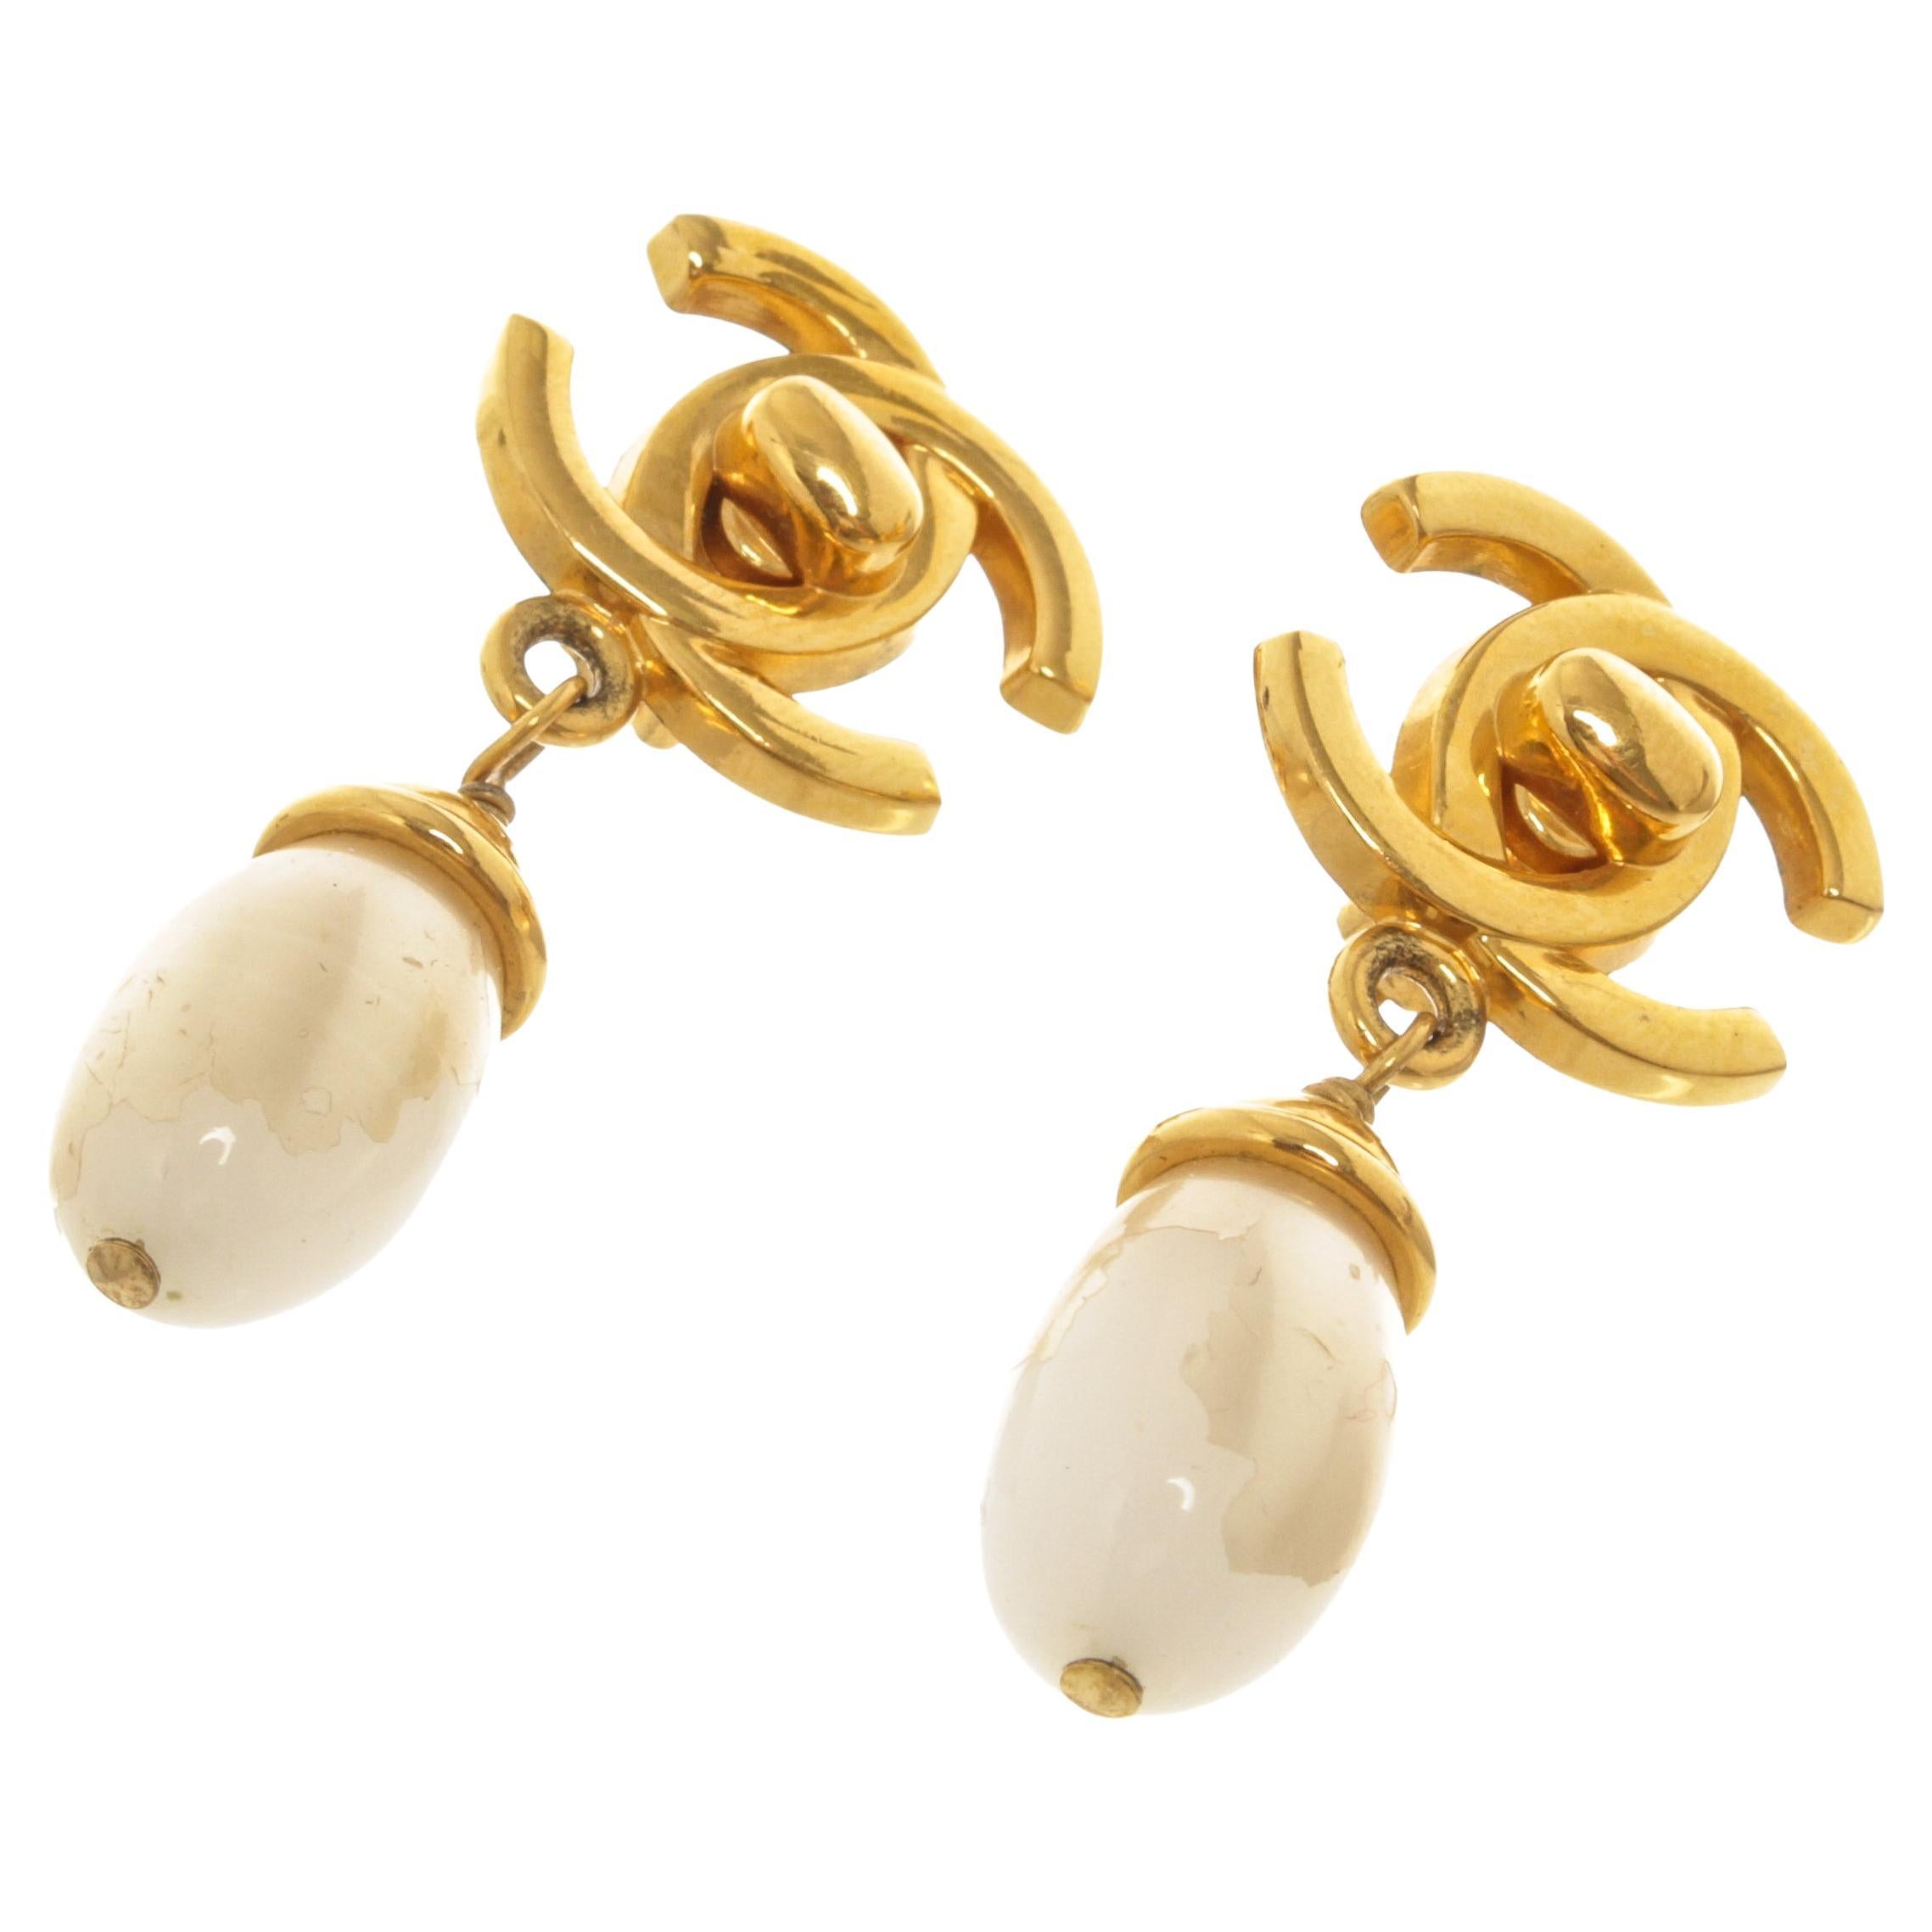 Boucles d'oreilles en or avec logo CC de Chanel